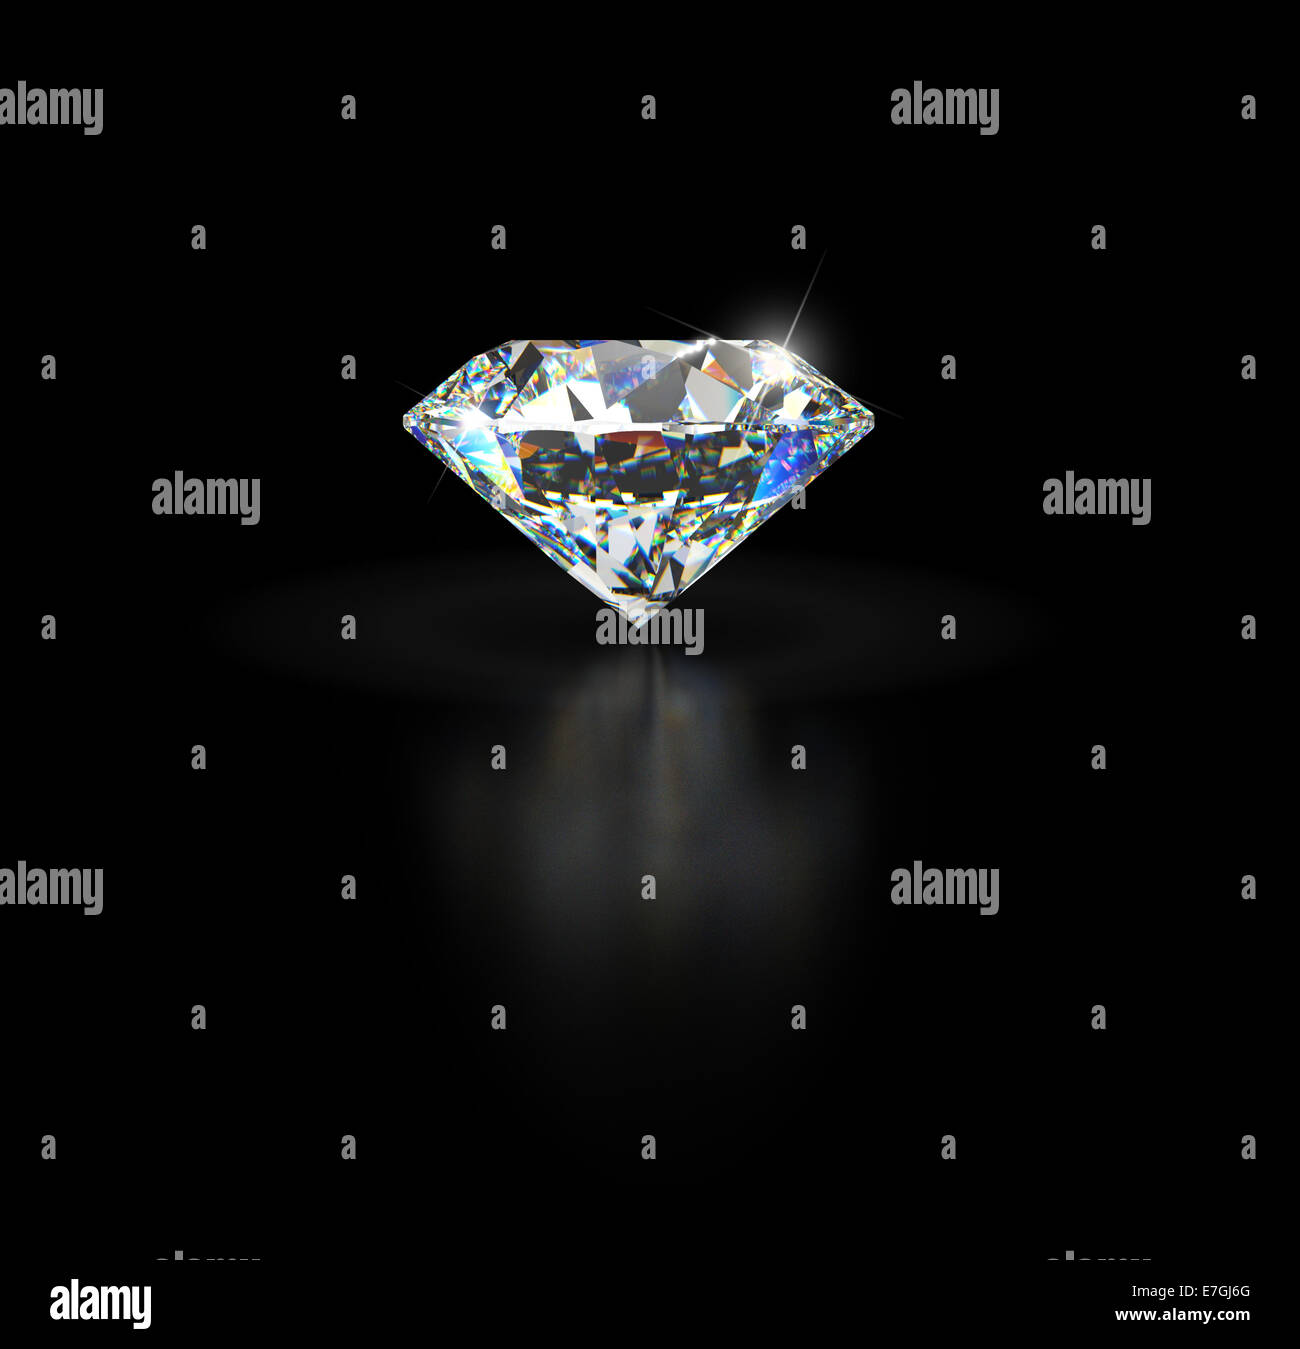 Diamant sur fond noir avec la réflexion et de l'espace vide pour un texte personnalisé. Banque D'Images